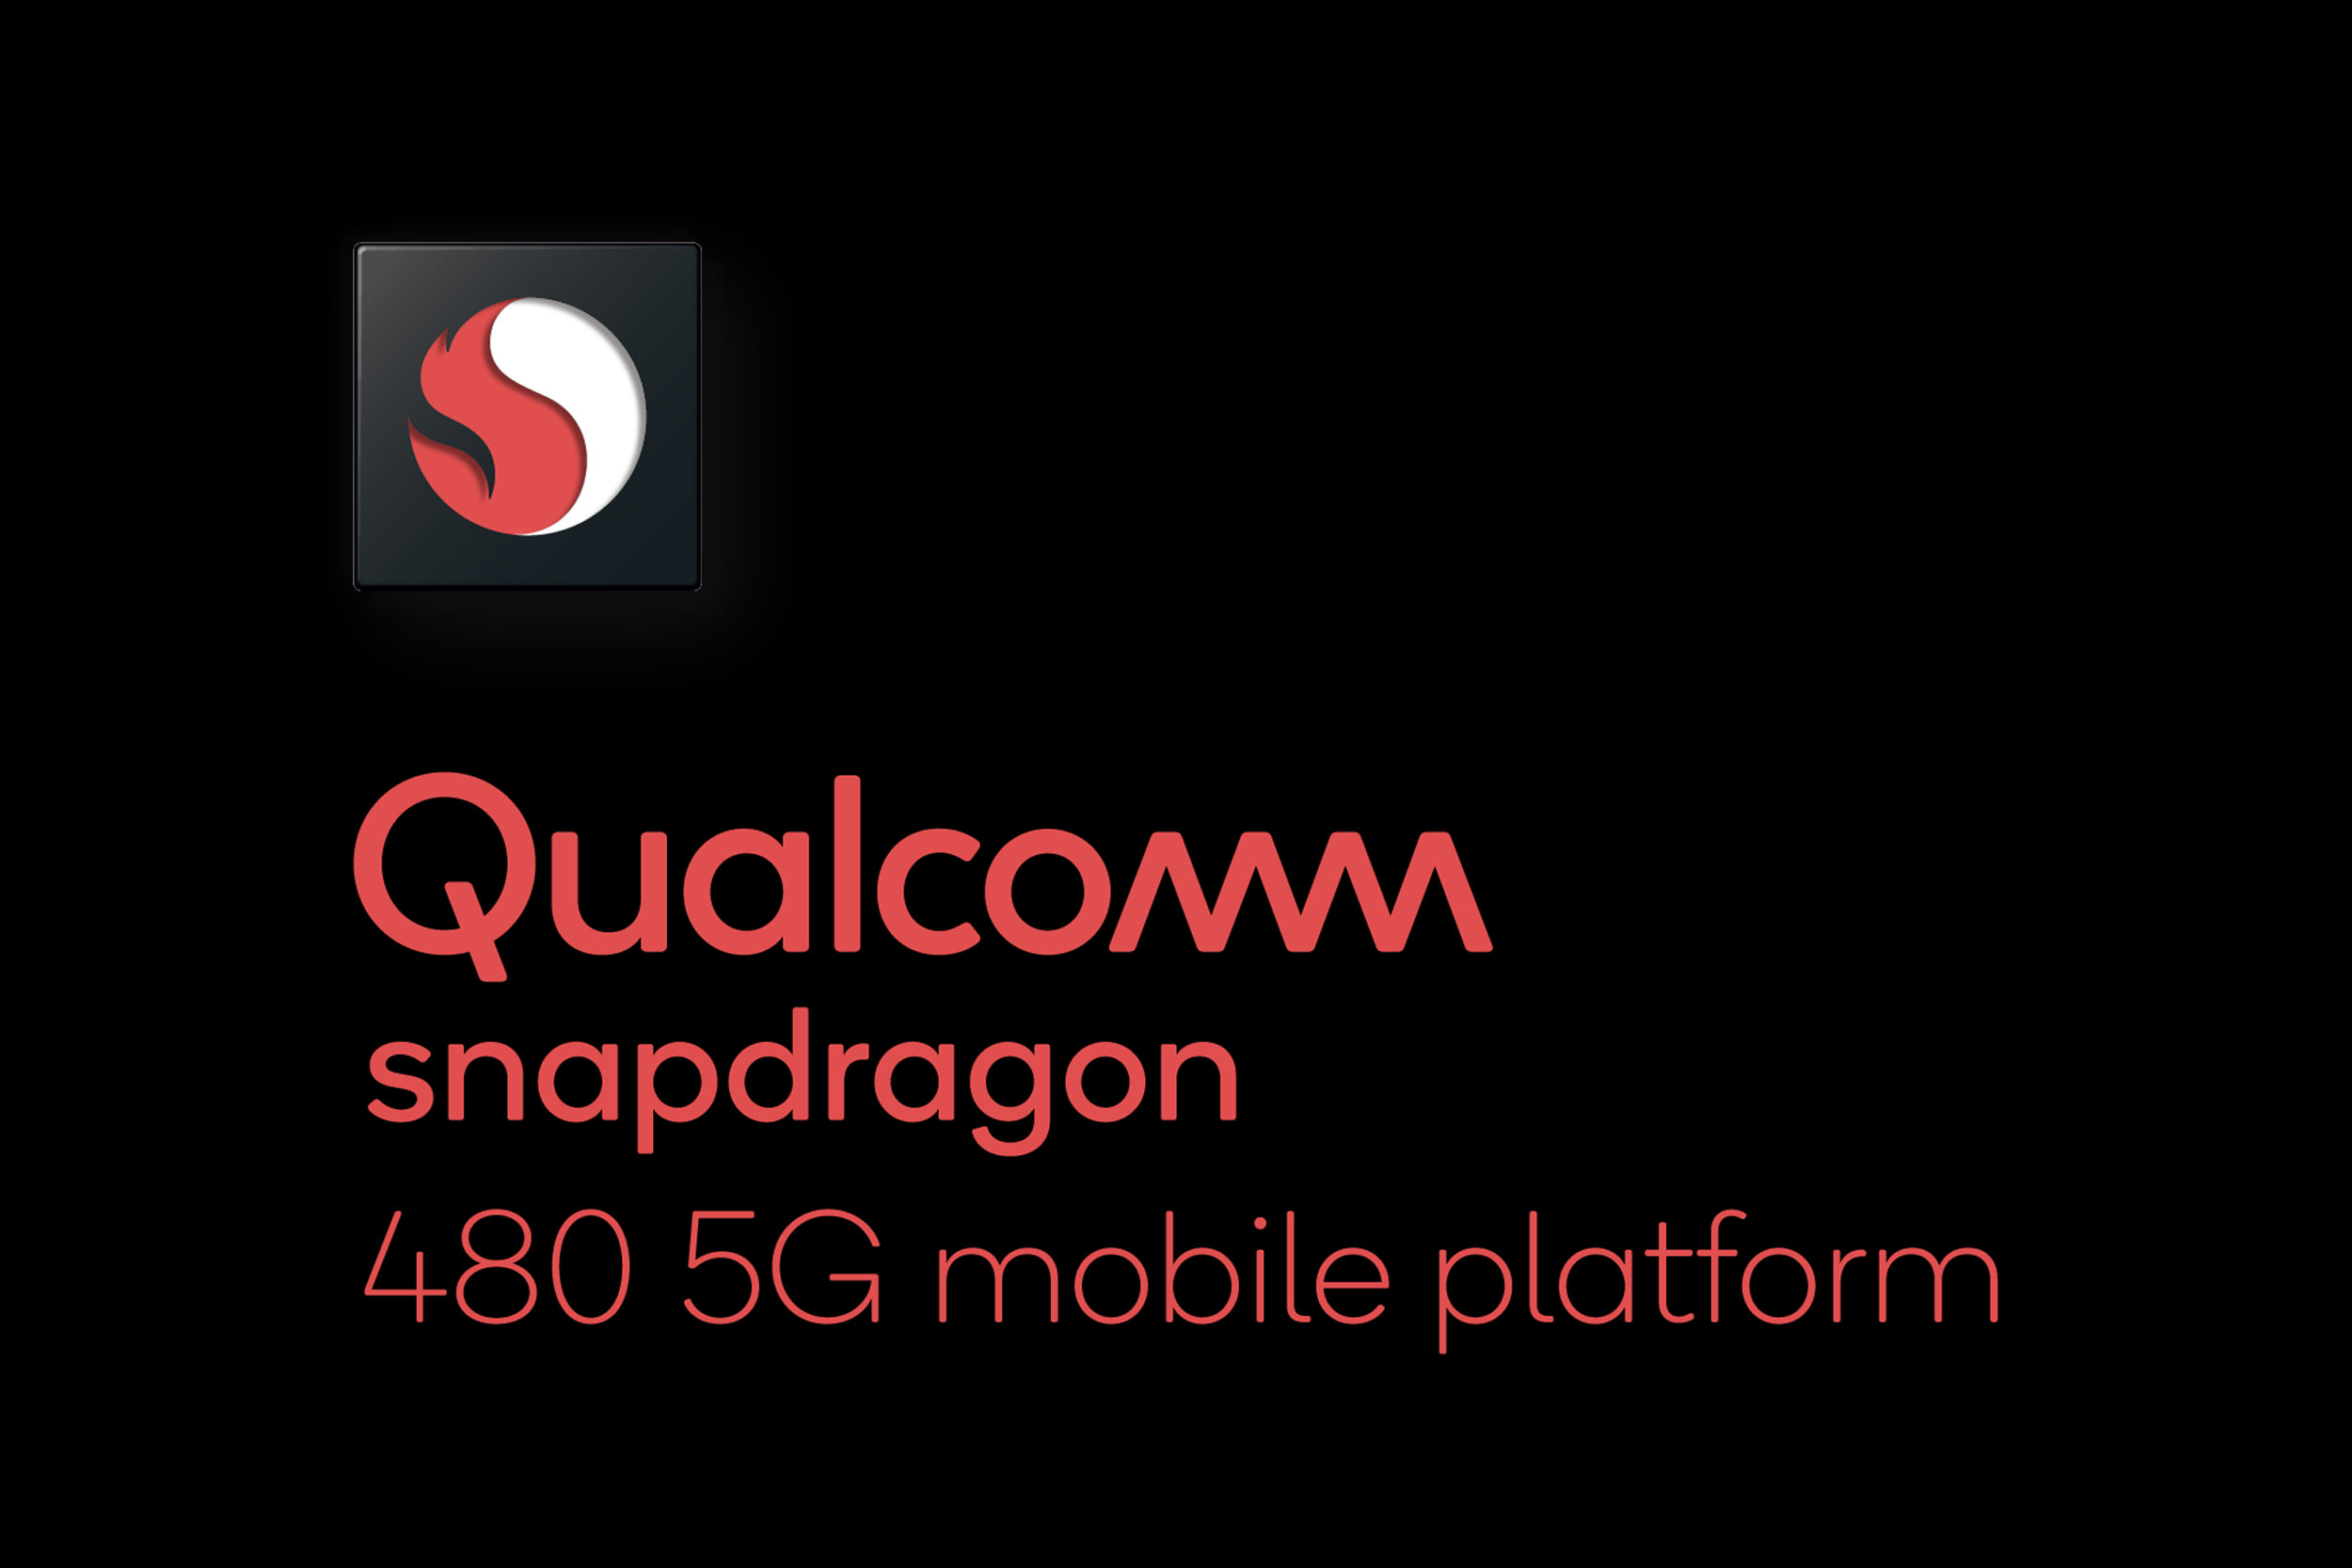 کوالکام اسنپدراگون 480 را با پشتیبانی از 5G برای گوشی های اقتصادی معرفی کرد